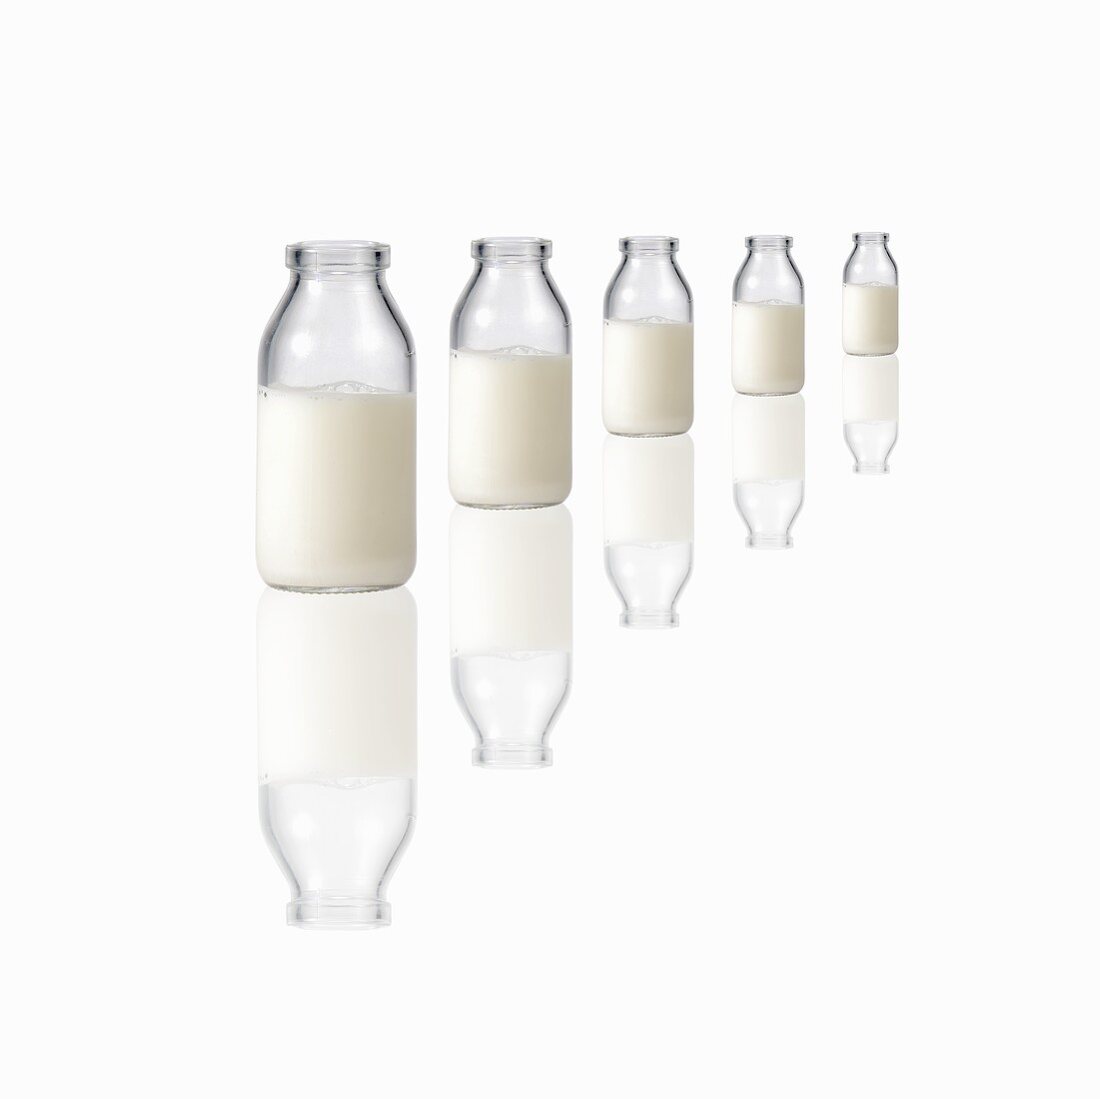 Fünf Milchflaschen auf spiegelnder Fläche